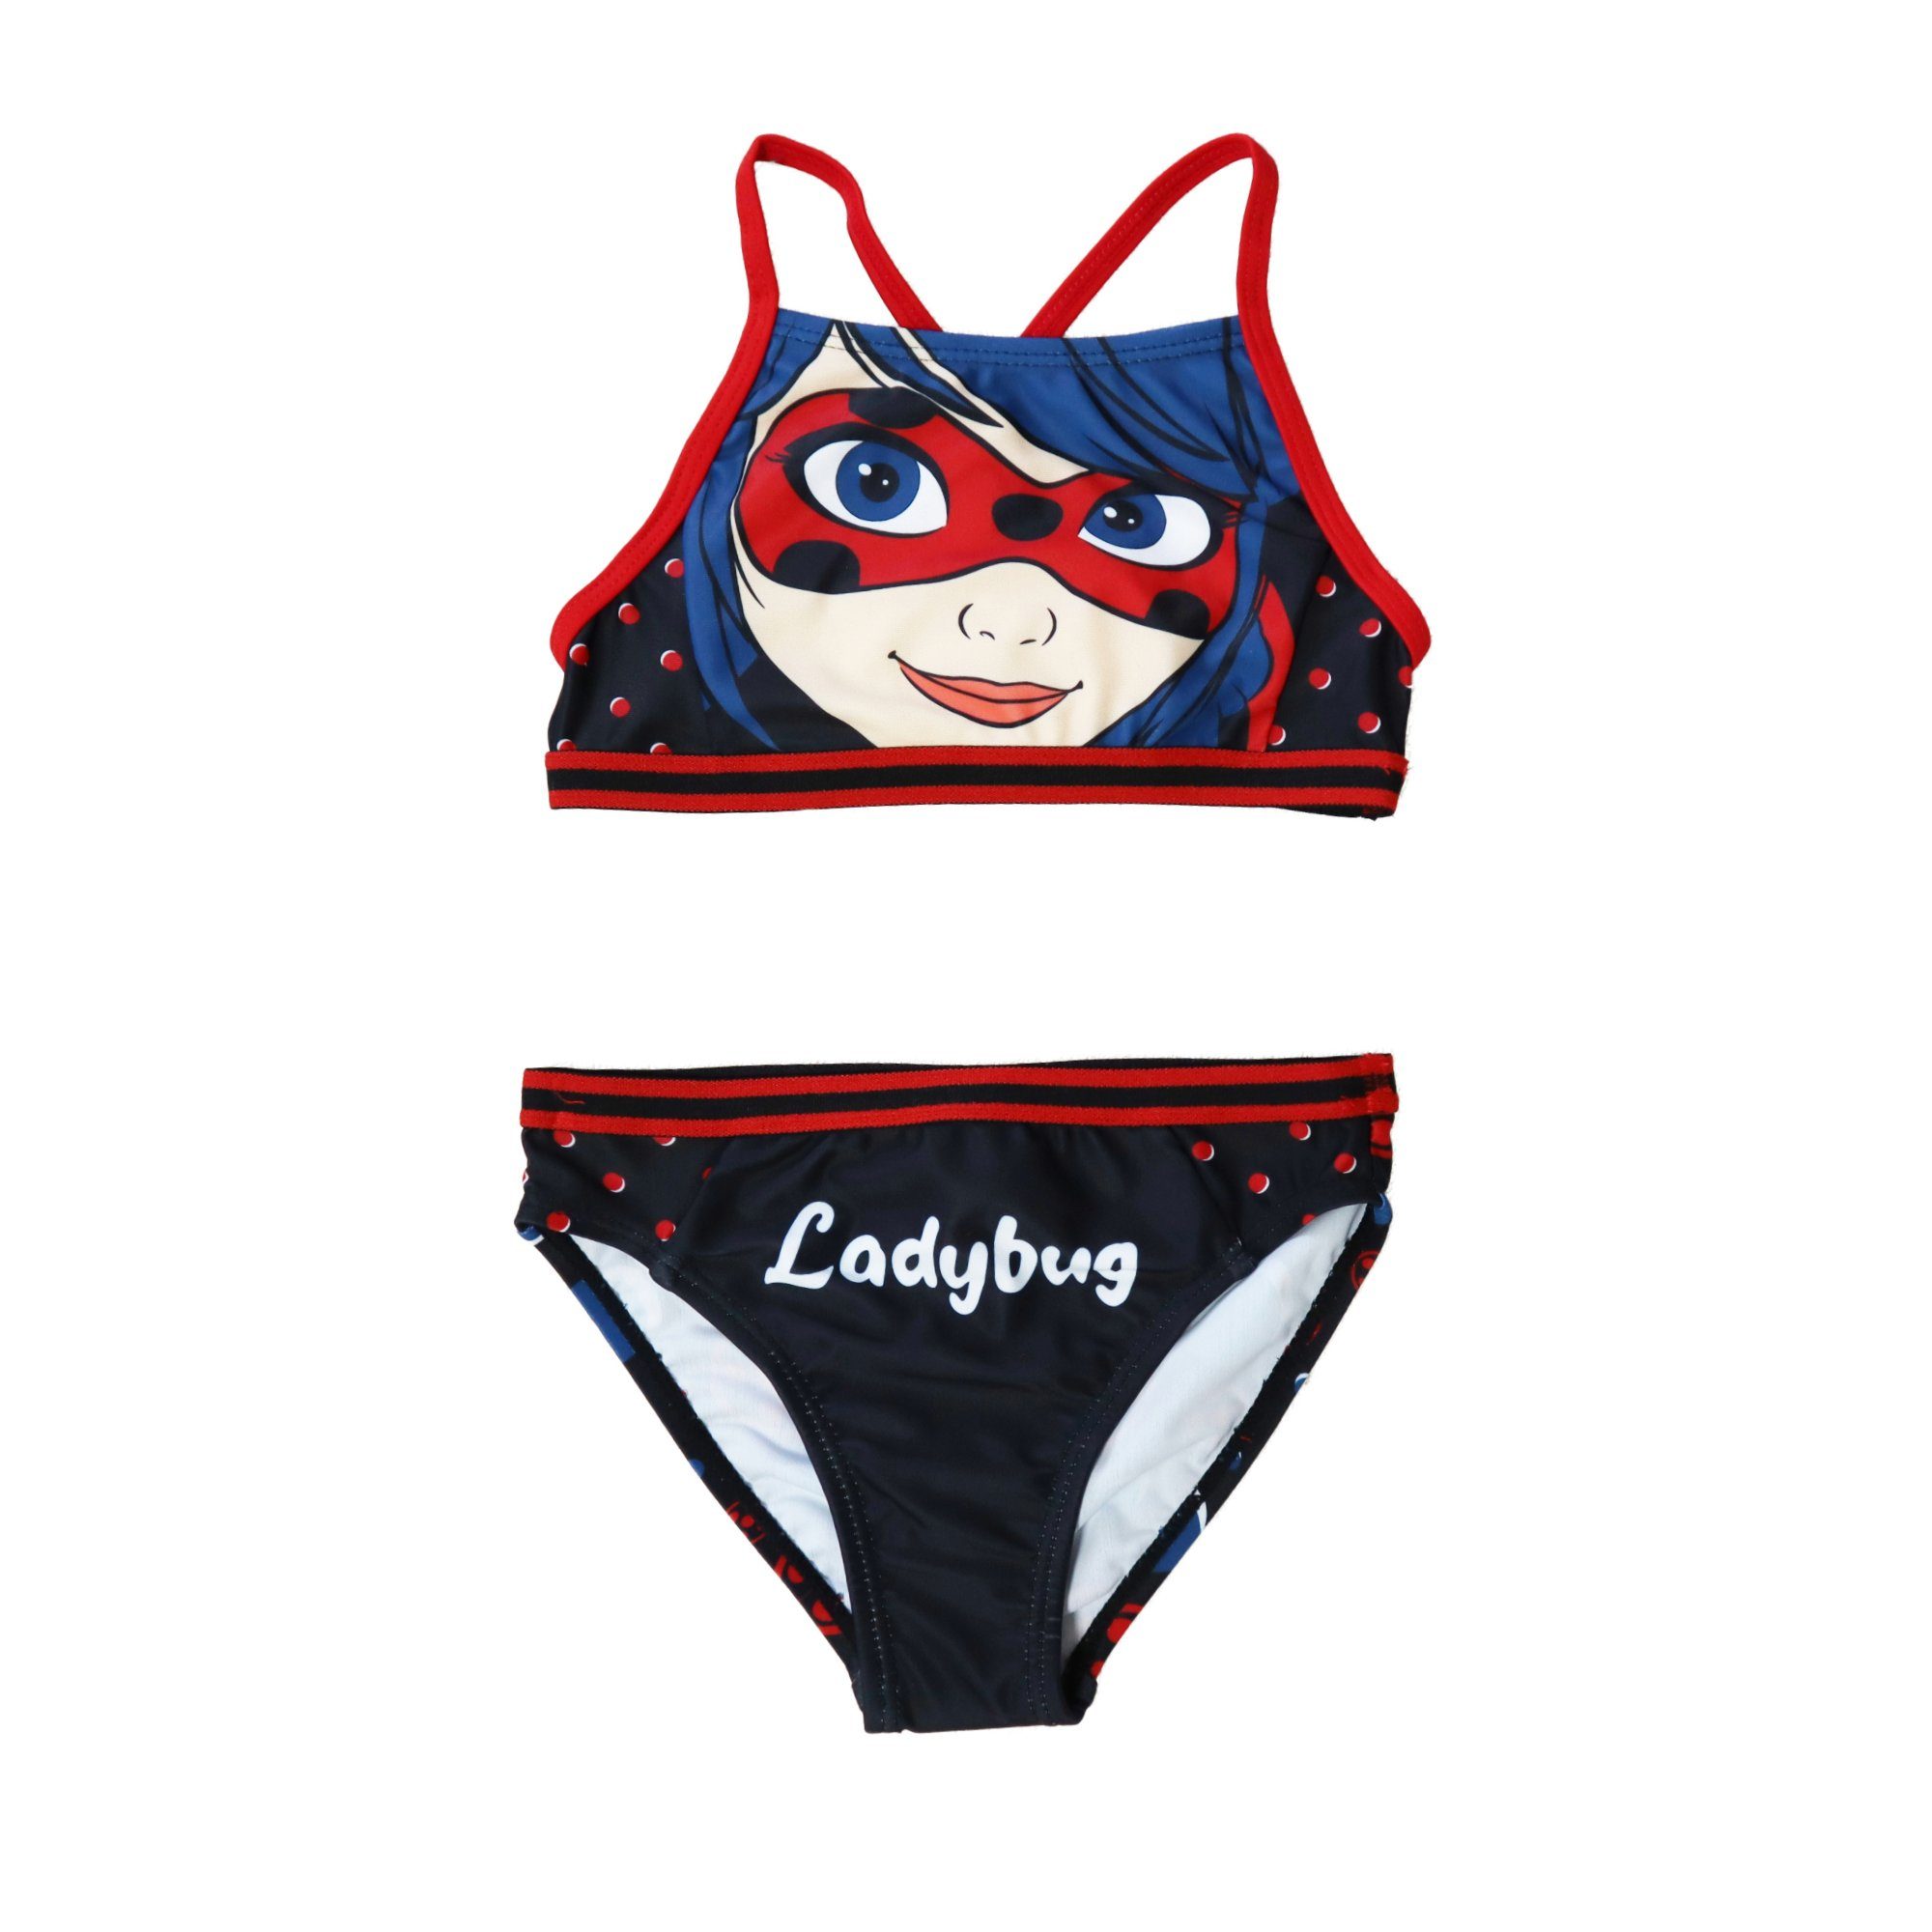 Miraculous - Ladybug Bustier-Bikini »Ladybug Kinder Bademode Mädchen  Schwimmanzug« Gr. 104 bis 128, Rot oder Schwarz online kaufen | OTTO